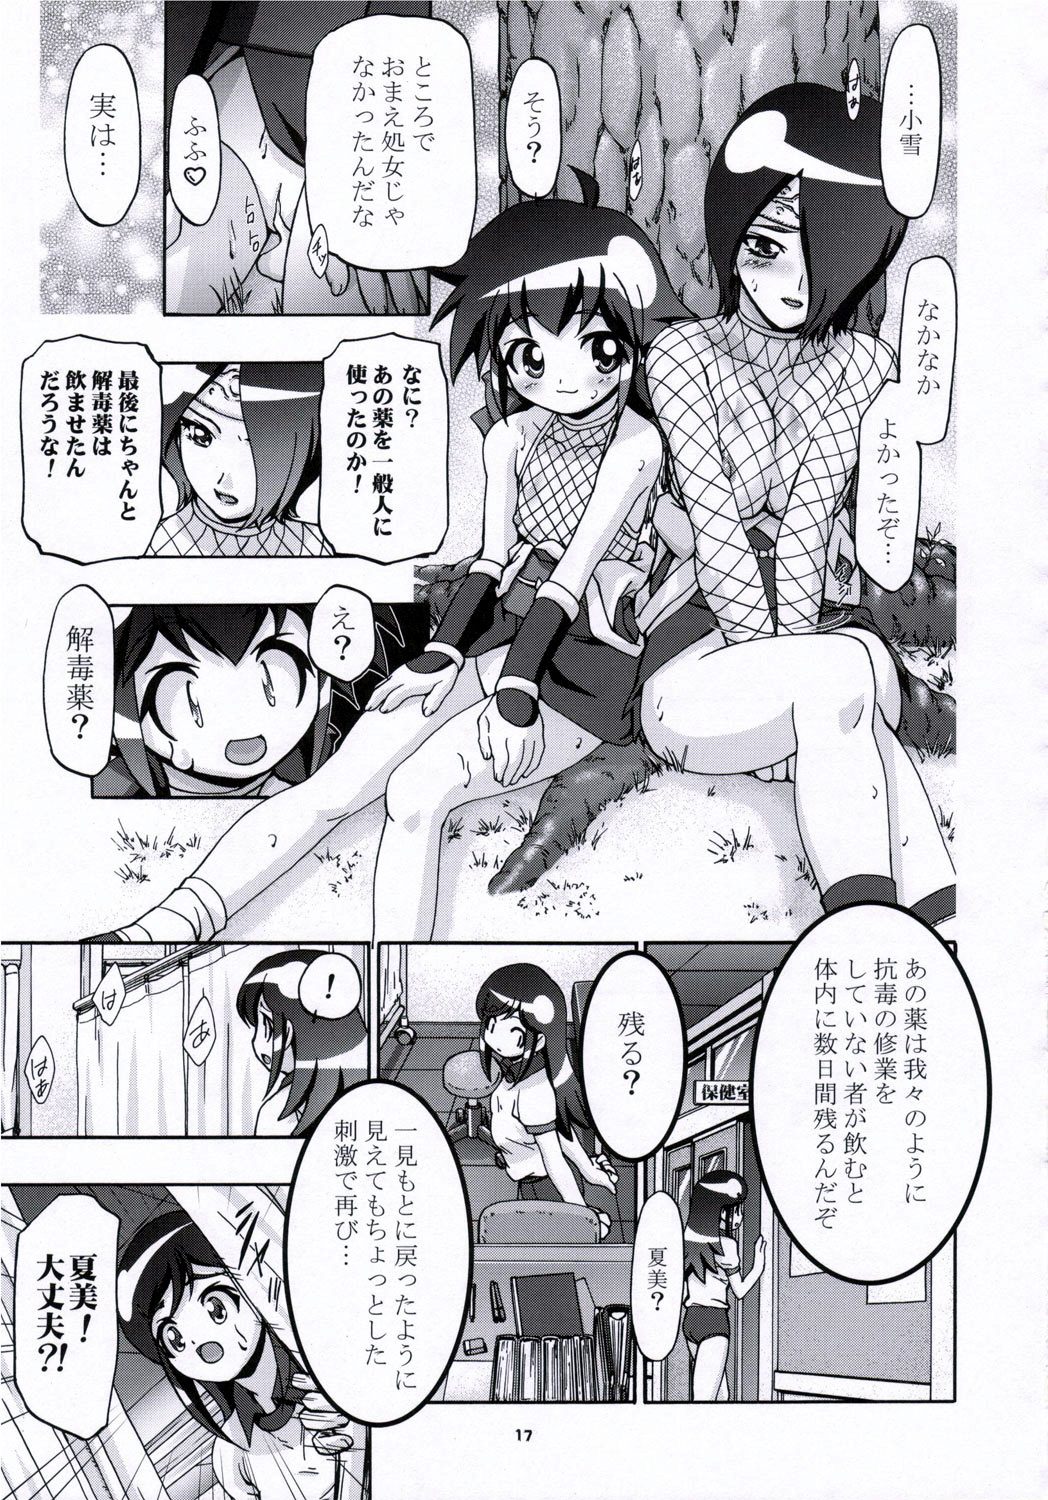 (SC31) [Gambler Club (Kousaka Jun)] Natsu Yuki - Summer Snow (Keroro Gunsou) page 16 full